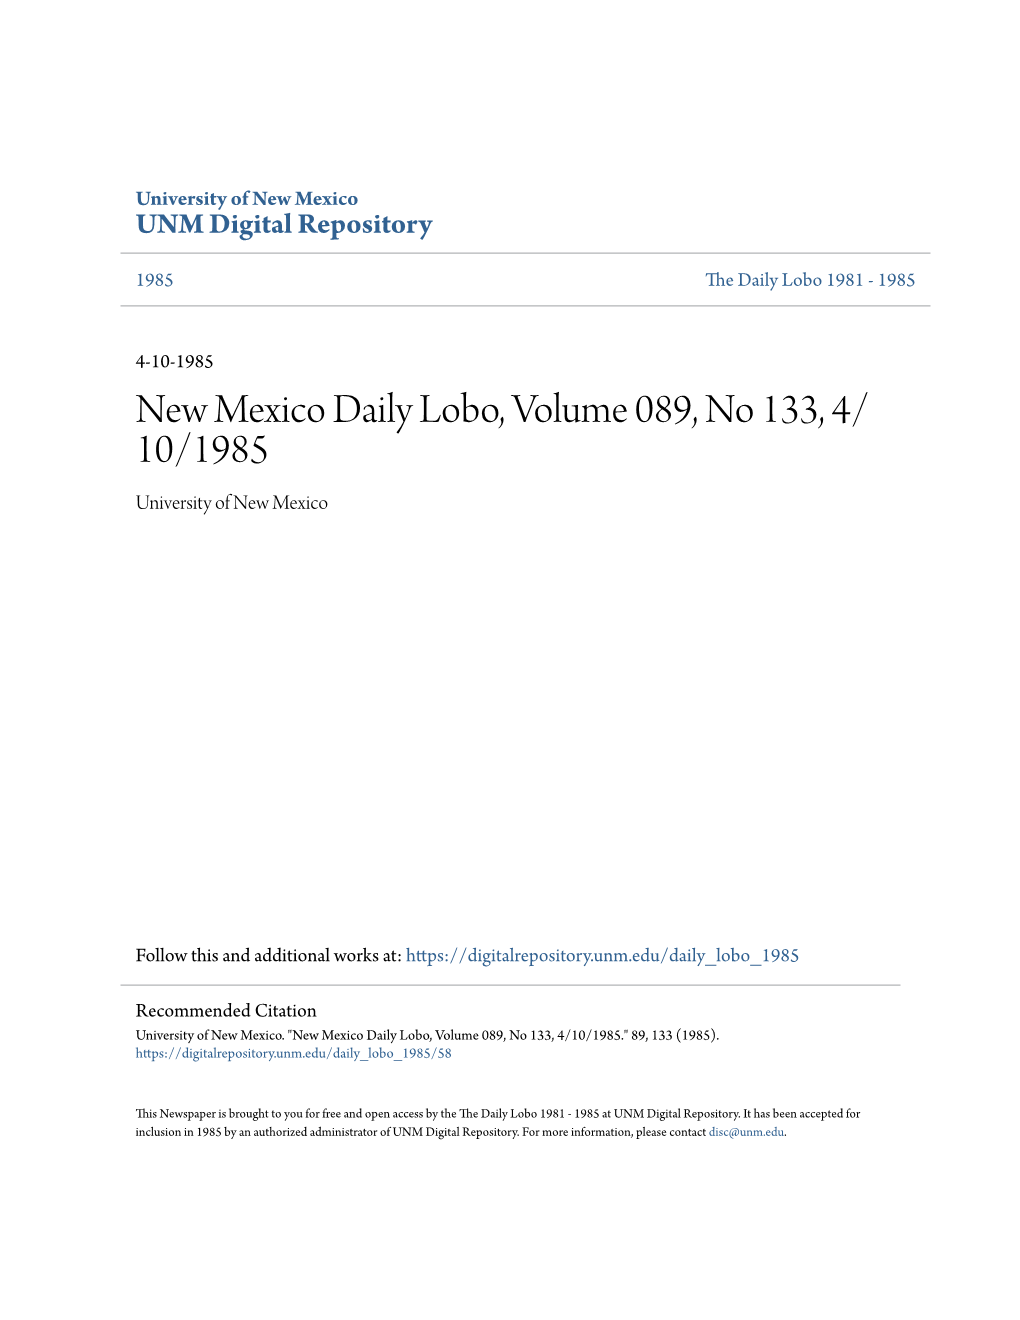 Daily Lobo, Volume 089, No 133, 4/ 10/1985 University of New Mexico